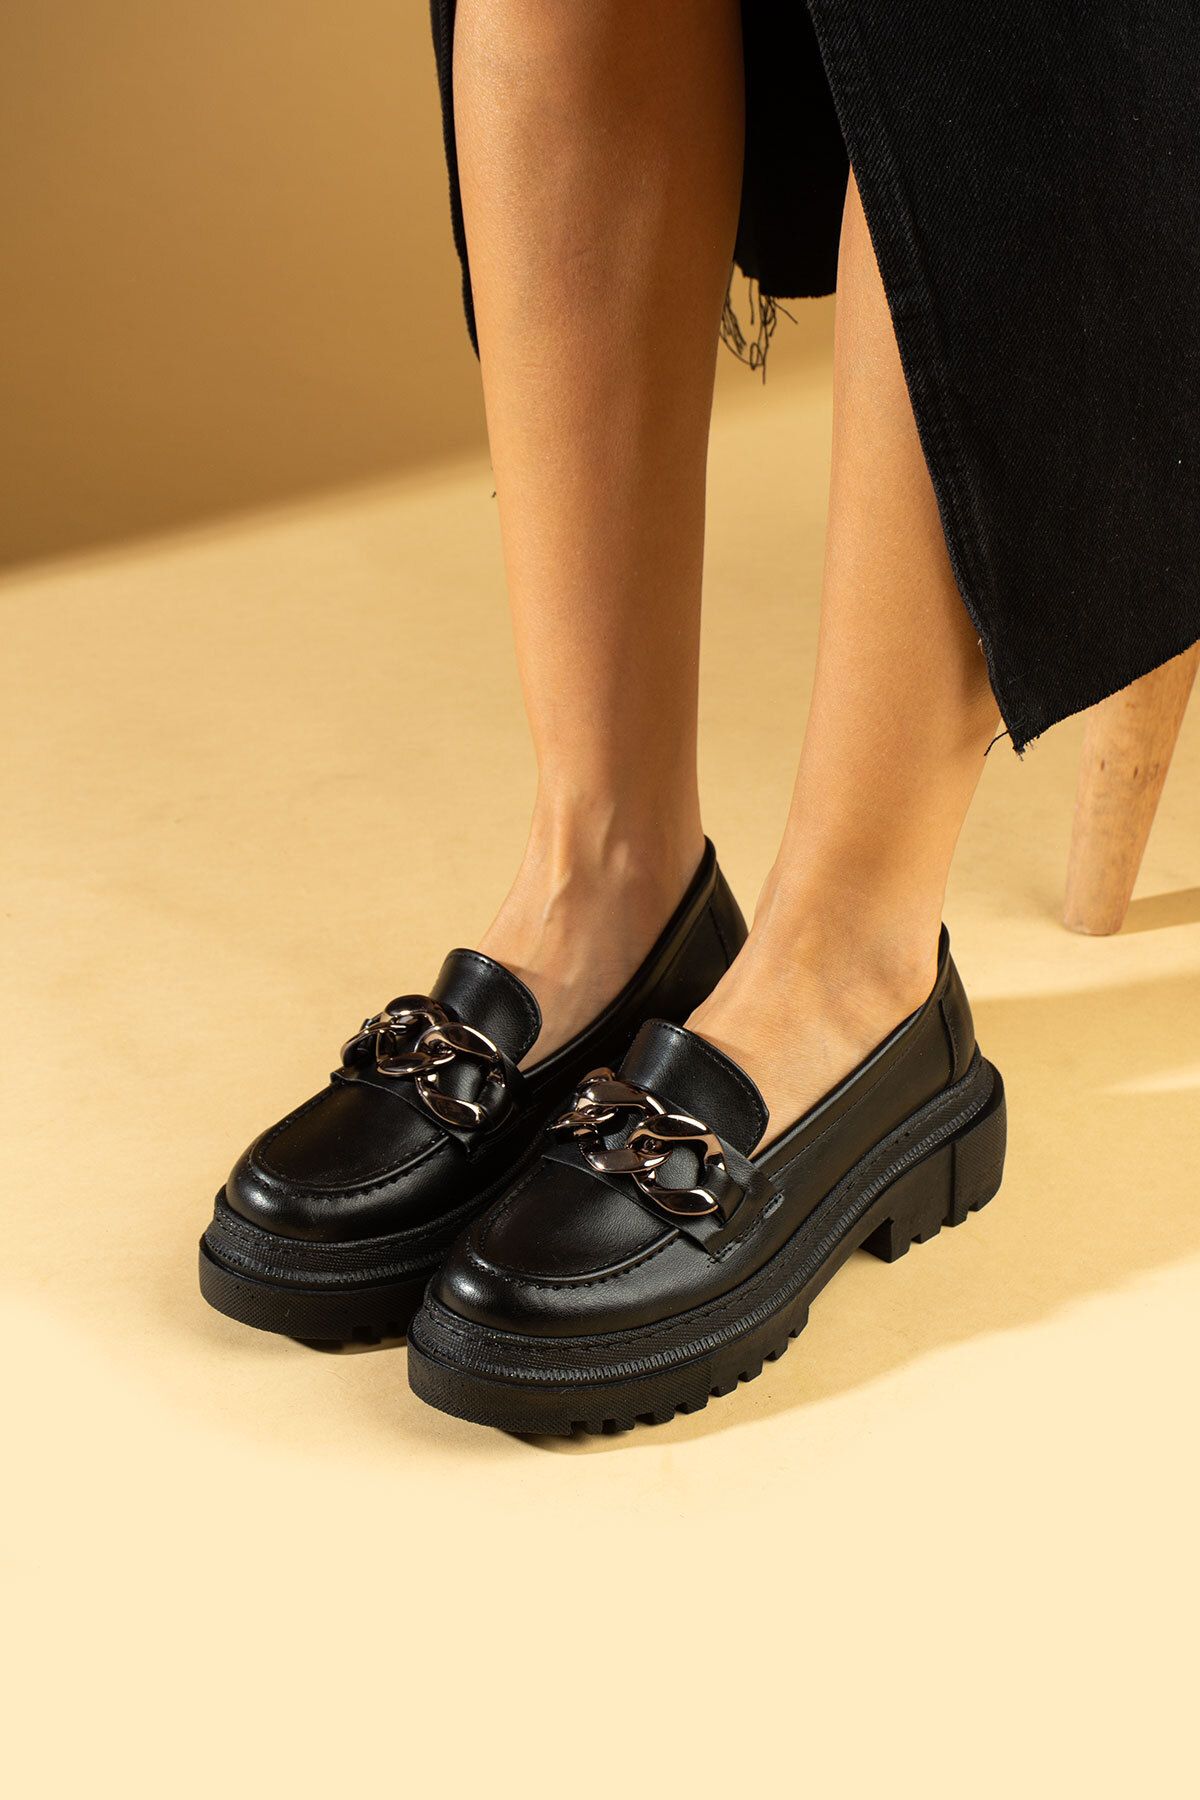 Pembe Potin Kadın Siyah Tokalı Kalın Taban Günlük Rahat Casual Ayakkabı